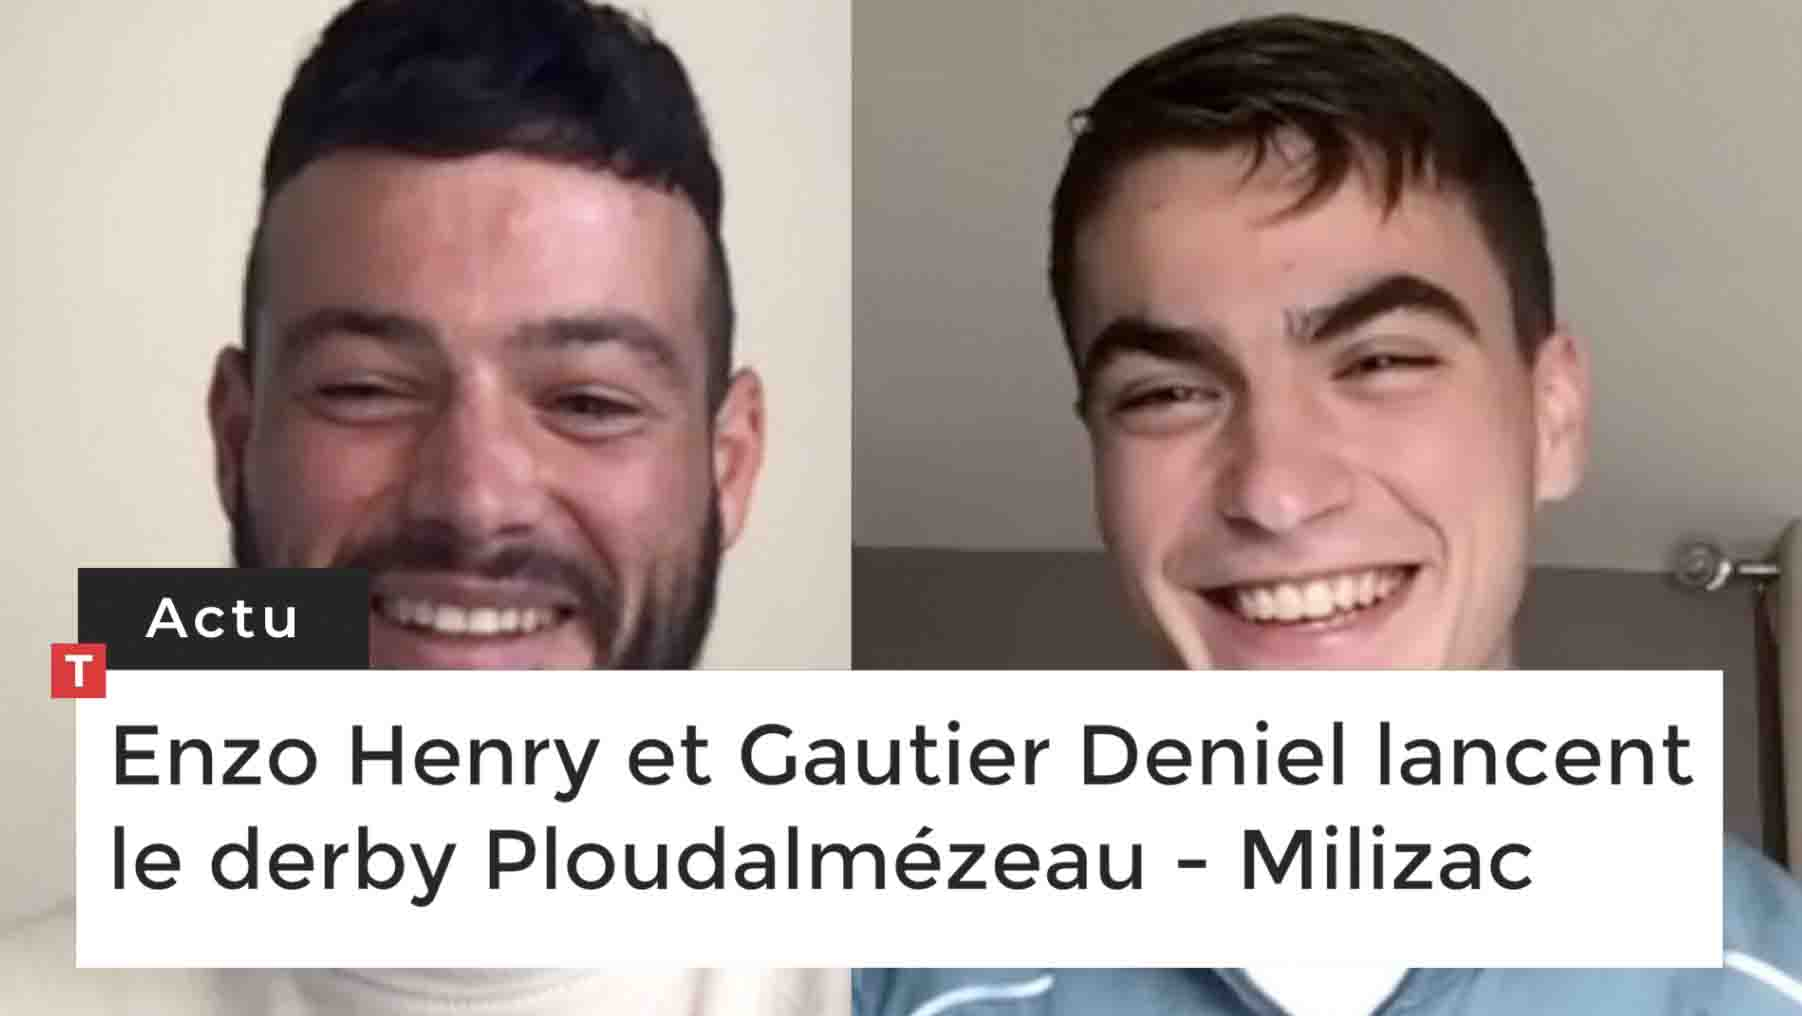 Enzo Henry et Gautier Deniel lancent le derby Ploudalmézeau - Milizac (Le Télégramme)